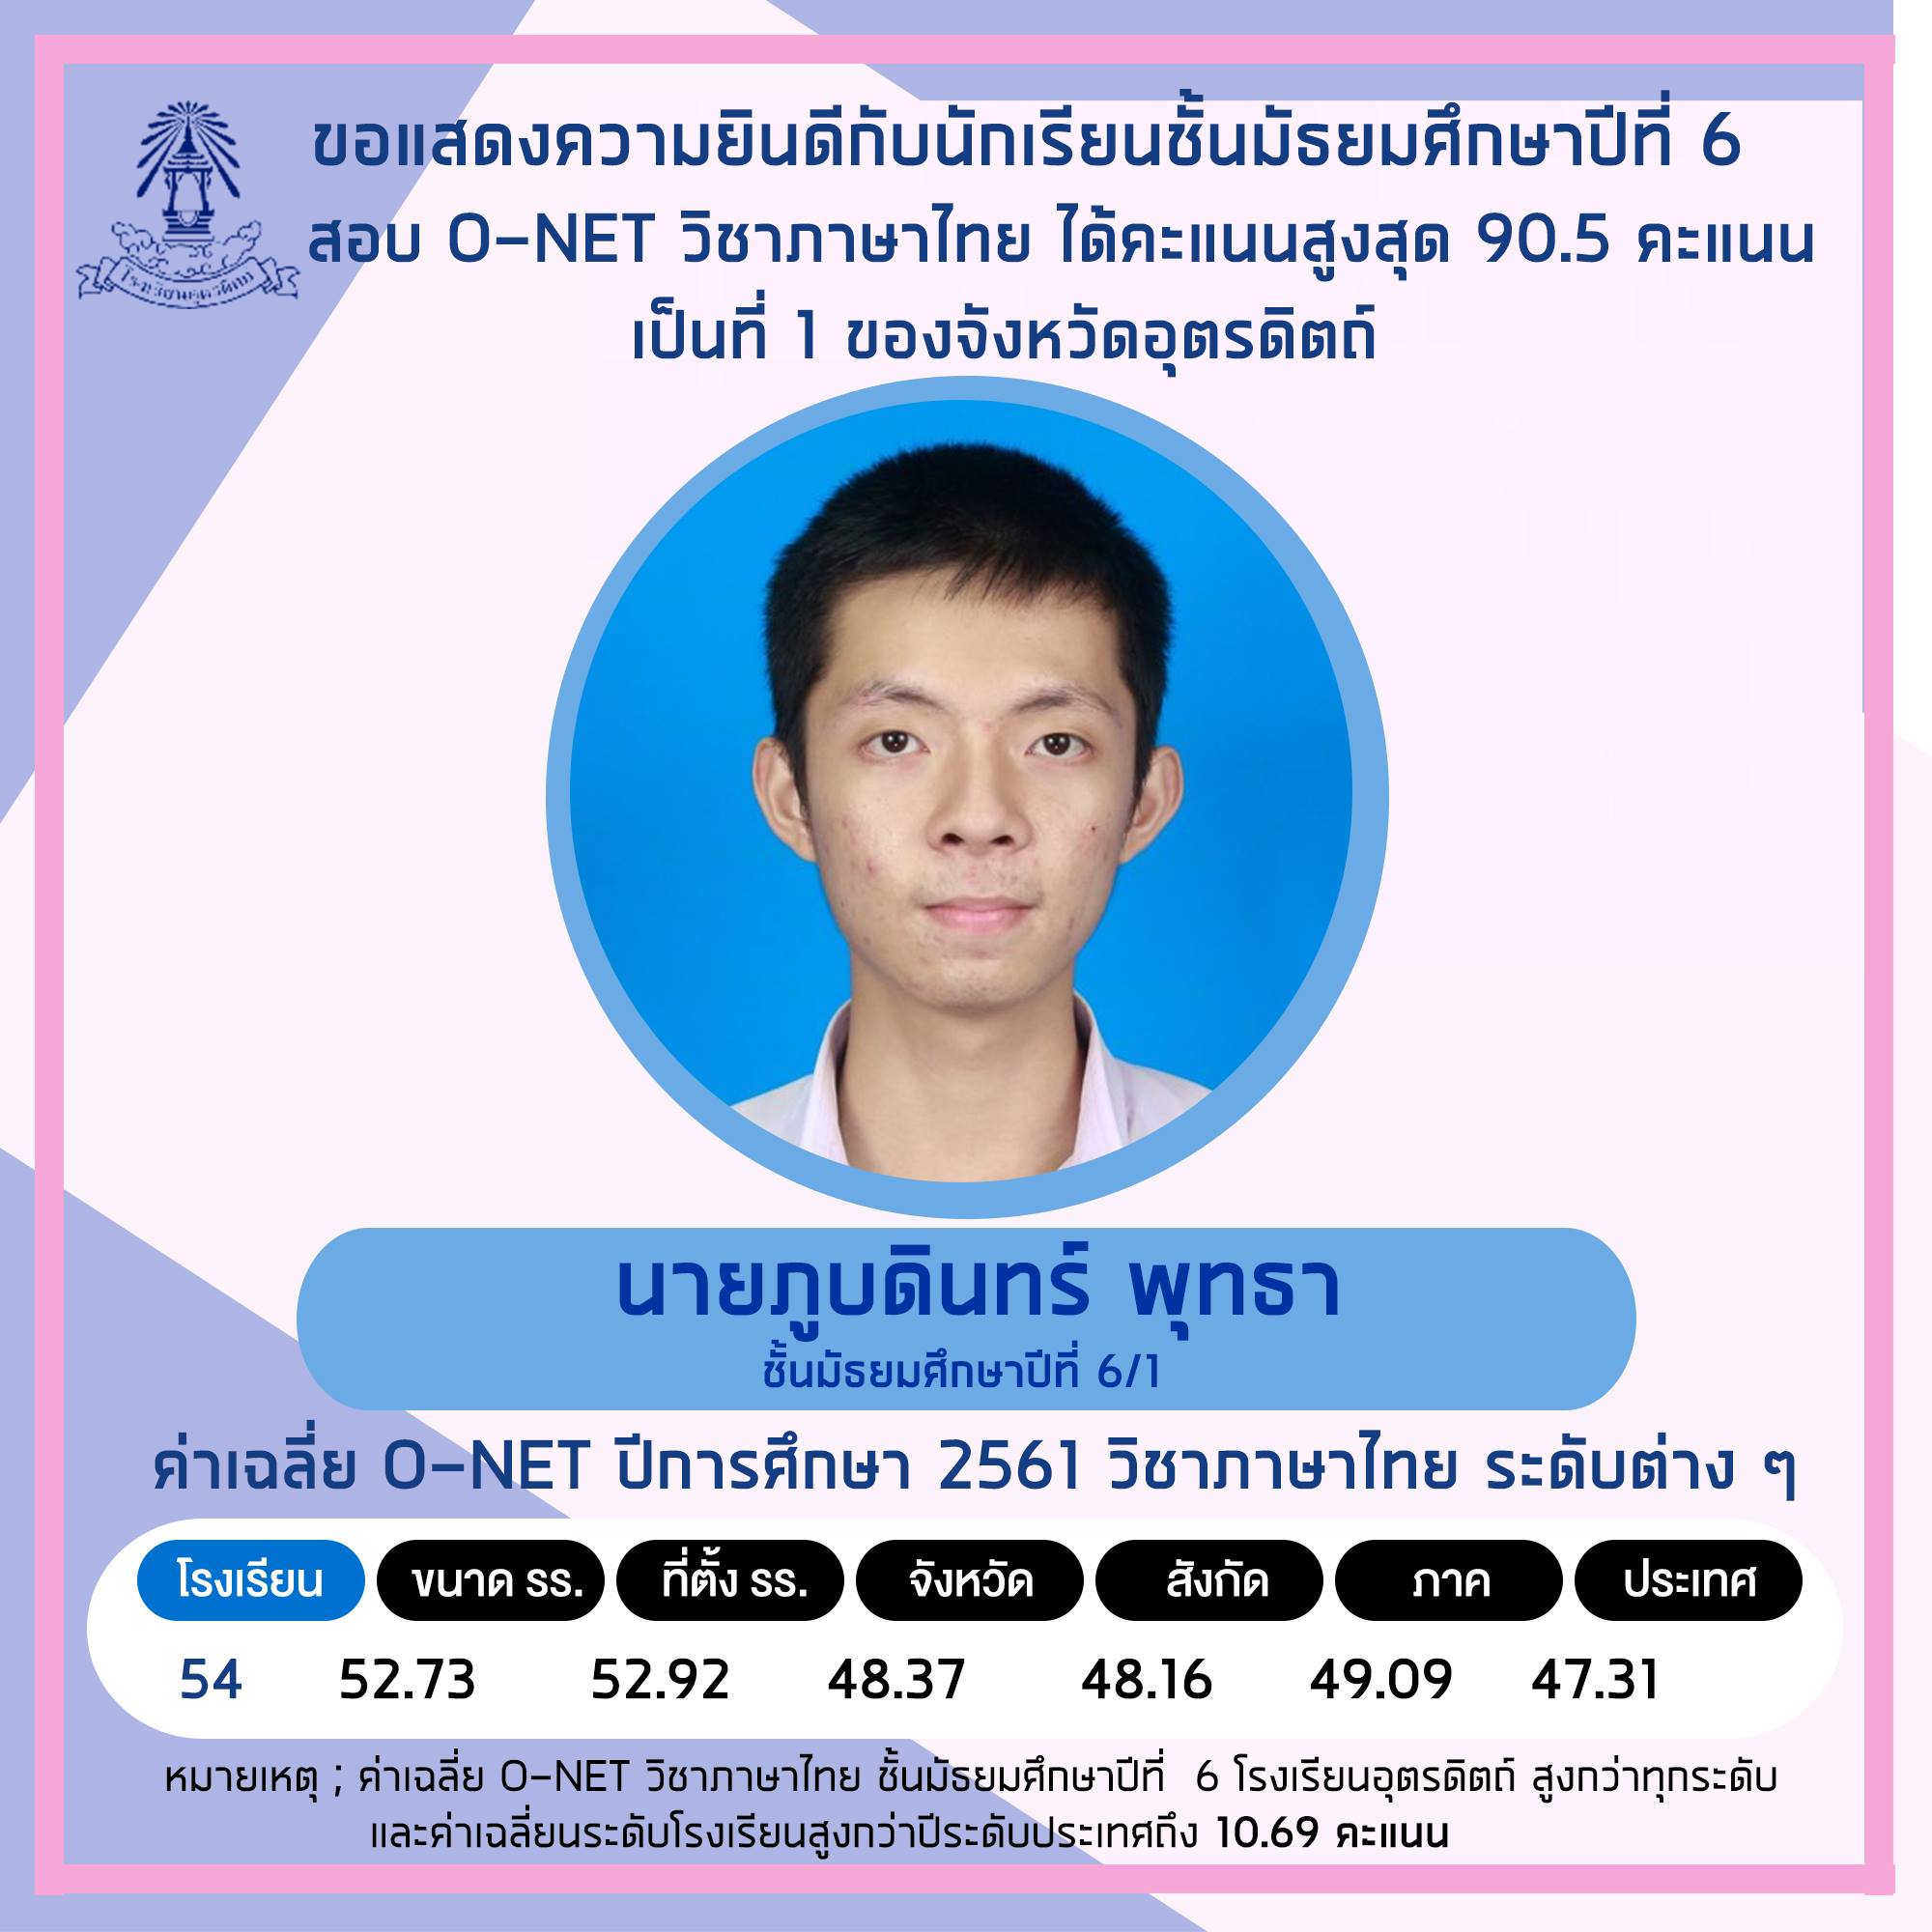 ขอแสดงความยินดีกับ “นายภูบดินทร์ พุทธา” นักเรียนชั้นมัธยมศึกษาปีที่ 6/1 โรงเรียนอุตรดิตถ์ สอบ O-NET วิชาภาษาไทย ปีการศึกษา 2561 ได้ คะแนนสูงที่สุดเป็นลำดับที่ 1 ในจังหวัดอุตรดิตถ์ จากนักเรียนทั้งหมด 2,153 คน และคะแนนเฉลี่ยของโรงเรียนอุตรดิตถ์ มากกว่าคะแนนเฉลี่ยระดับประเทศ ถึง 10.69 คะแนน